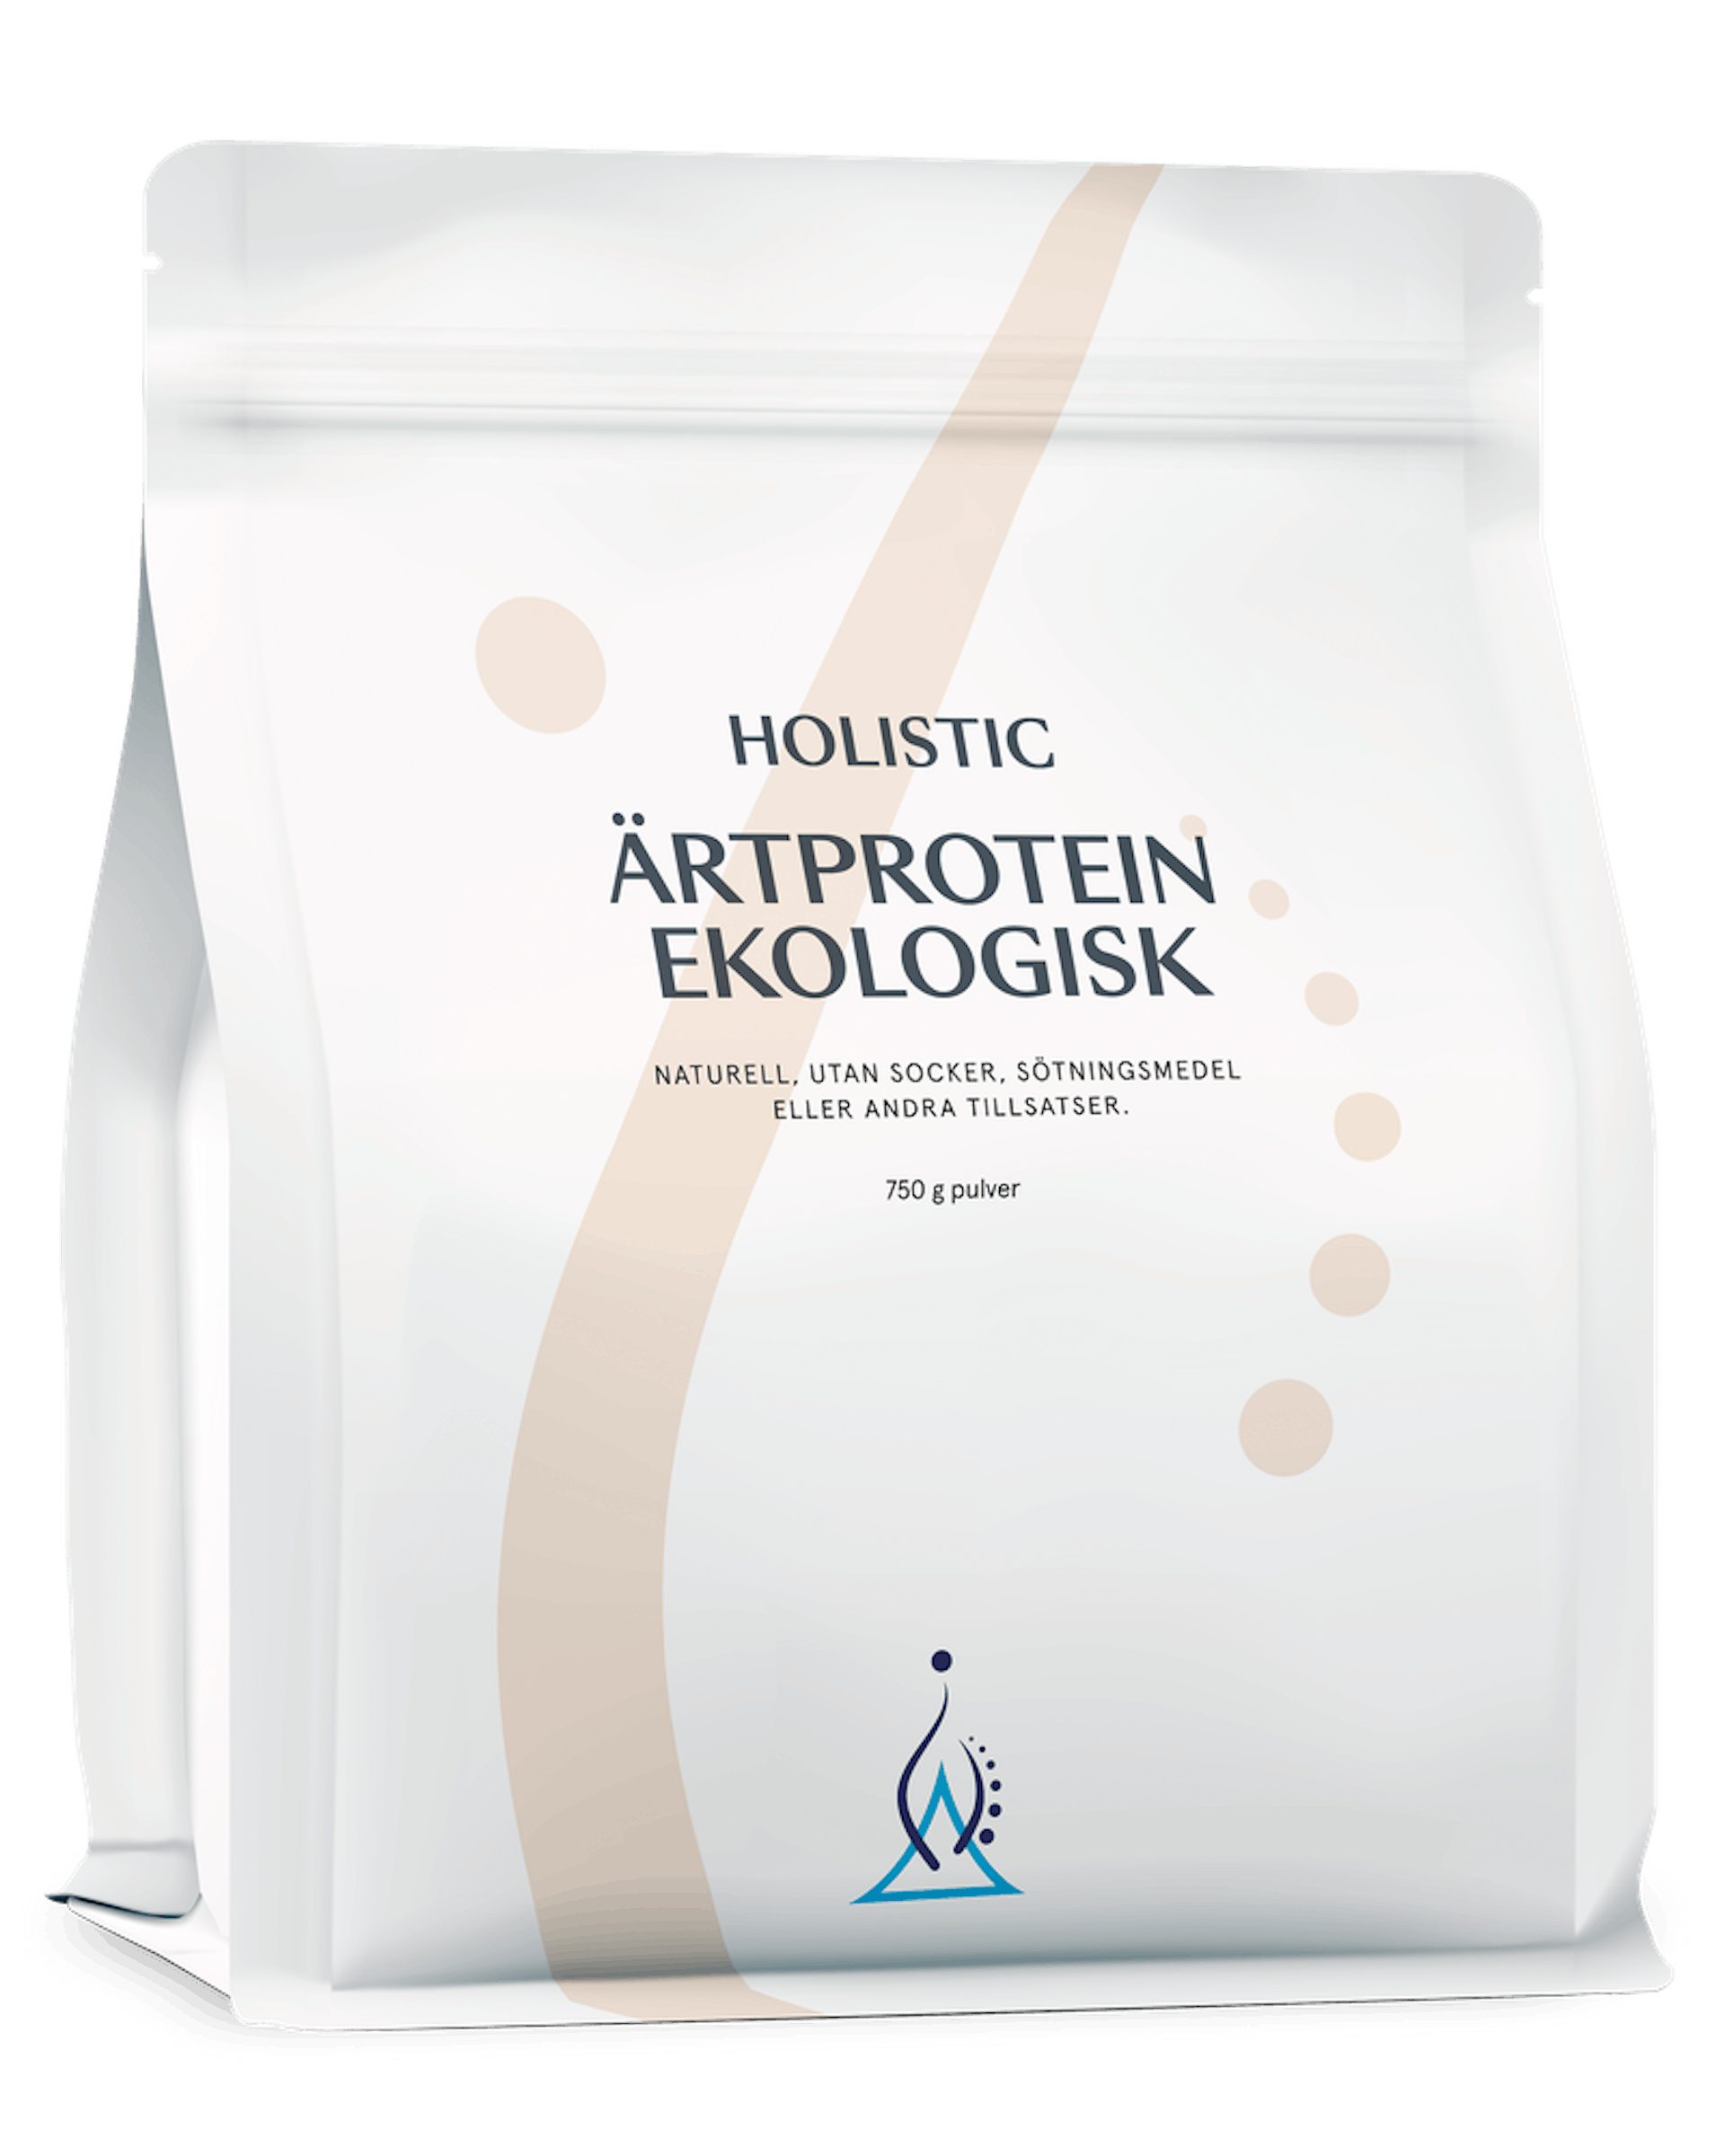 Ärtprotein ekologisk, 750 g (1 av 1)